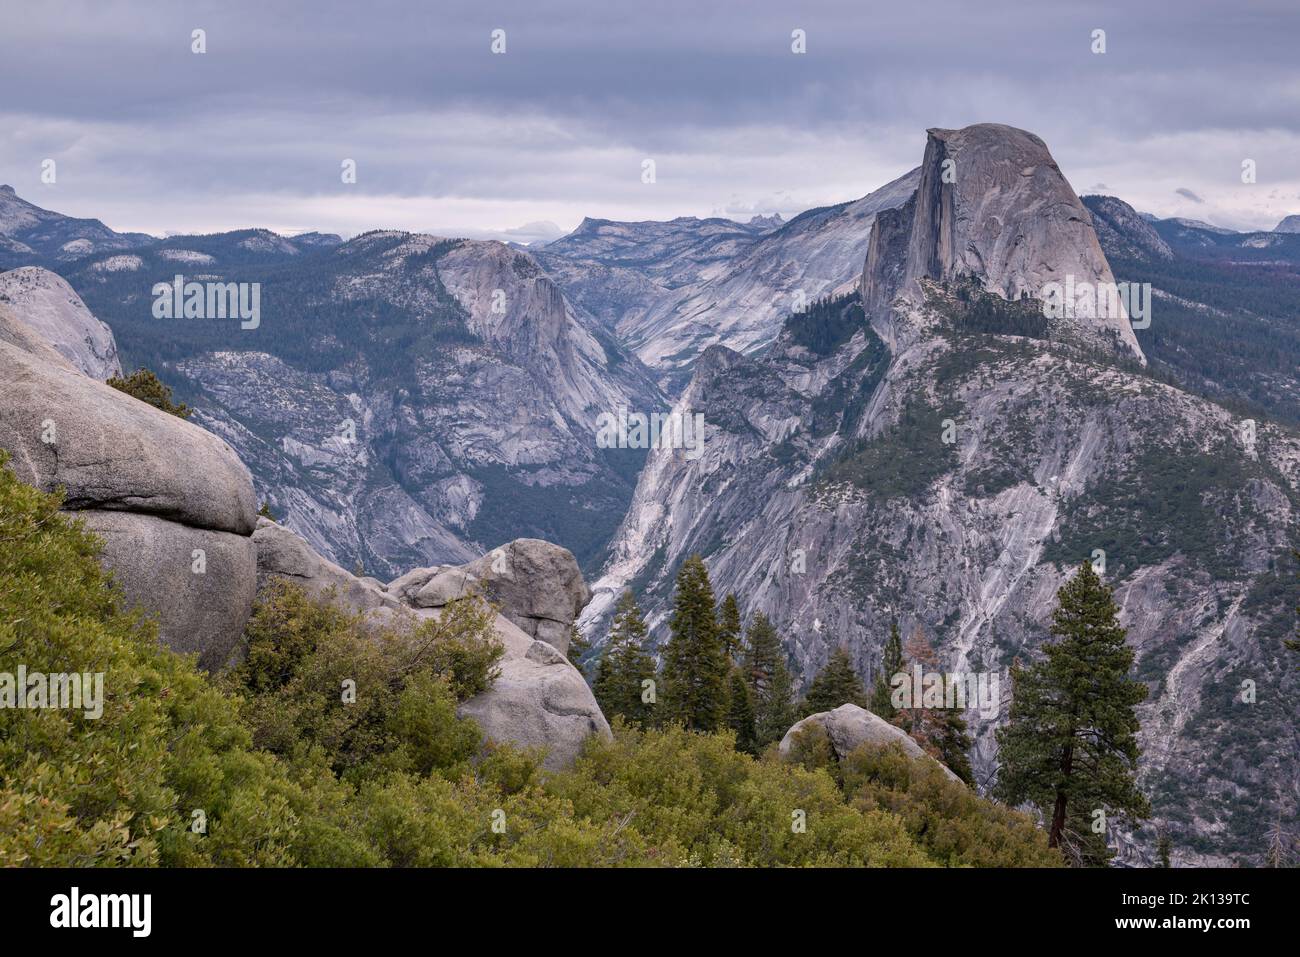 Half Dome et Yosemite Valley depuis Glacier point, parc national de Yosemite, site classé au patrimoine mondial de l'UNESCO, Californie, États-Unis d'Amérique, Amérique du Nord Banque D'Images